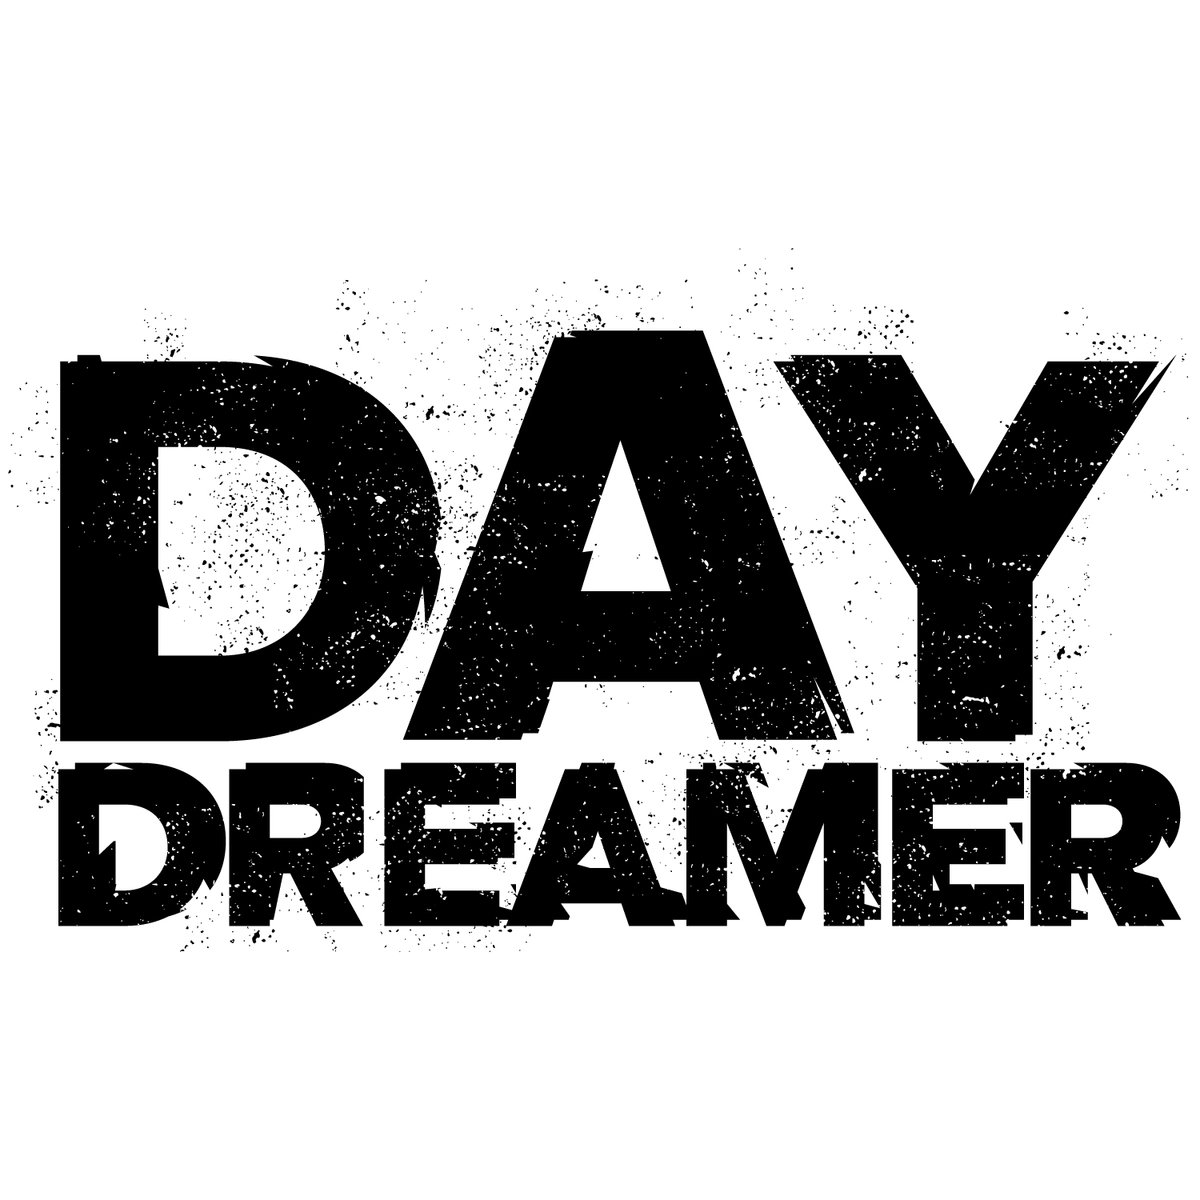 Day dreamer. Daydreamer. Daydreamer 2007. Vicki_Dreamer. Daydreamer private.